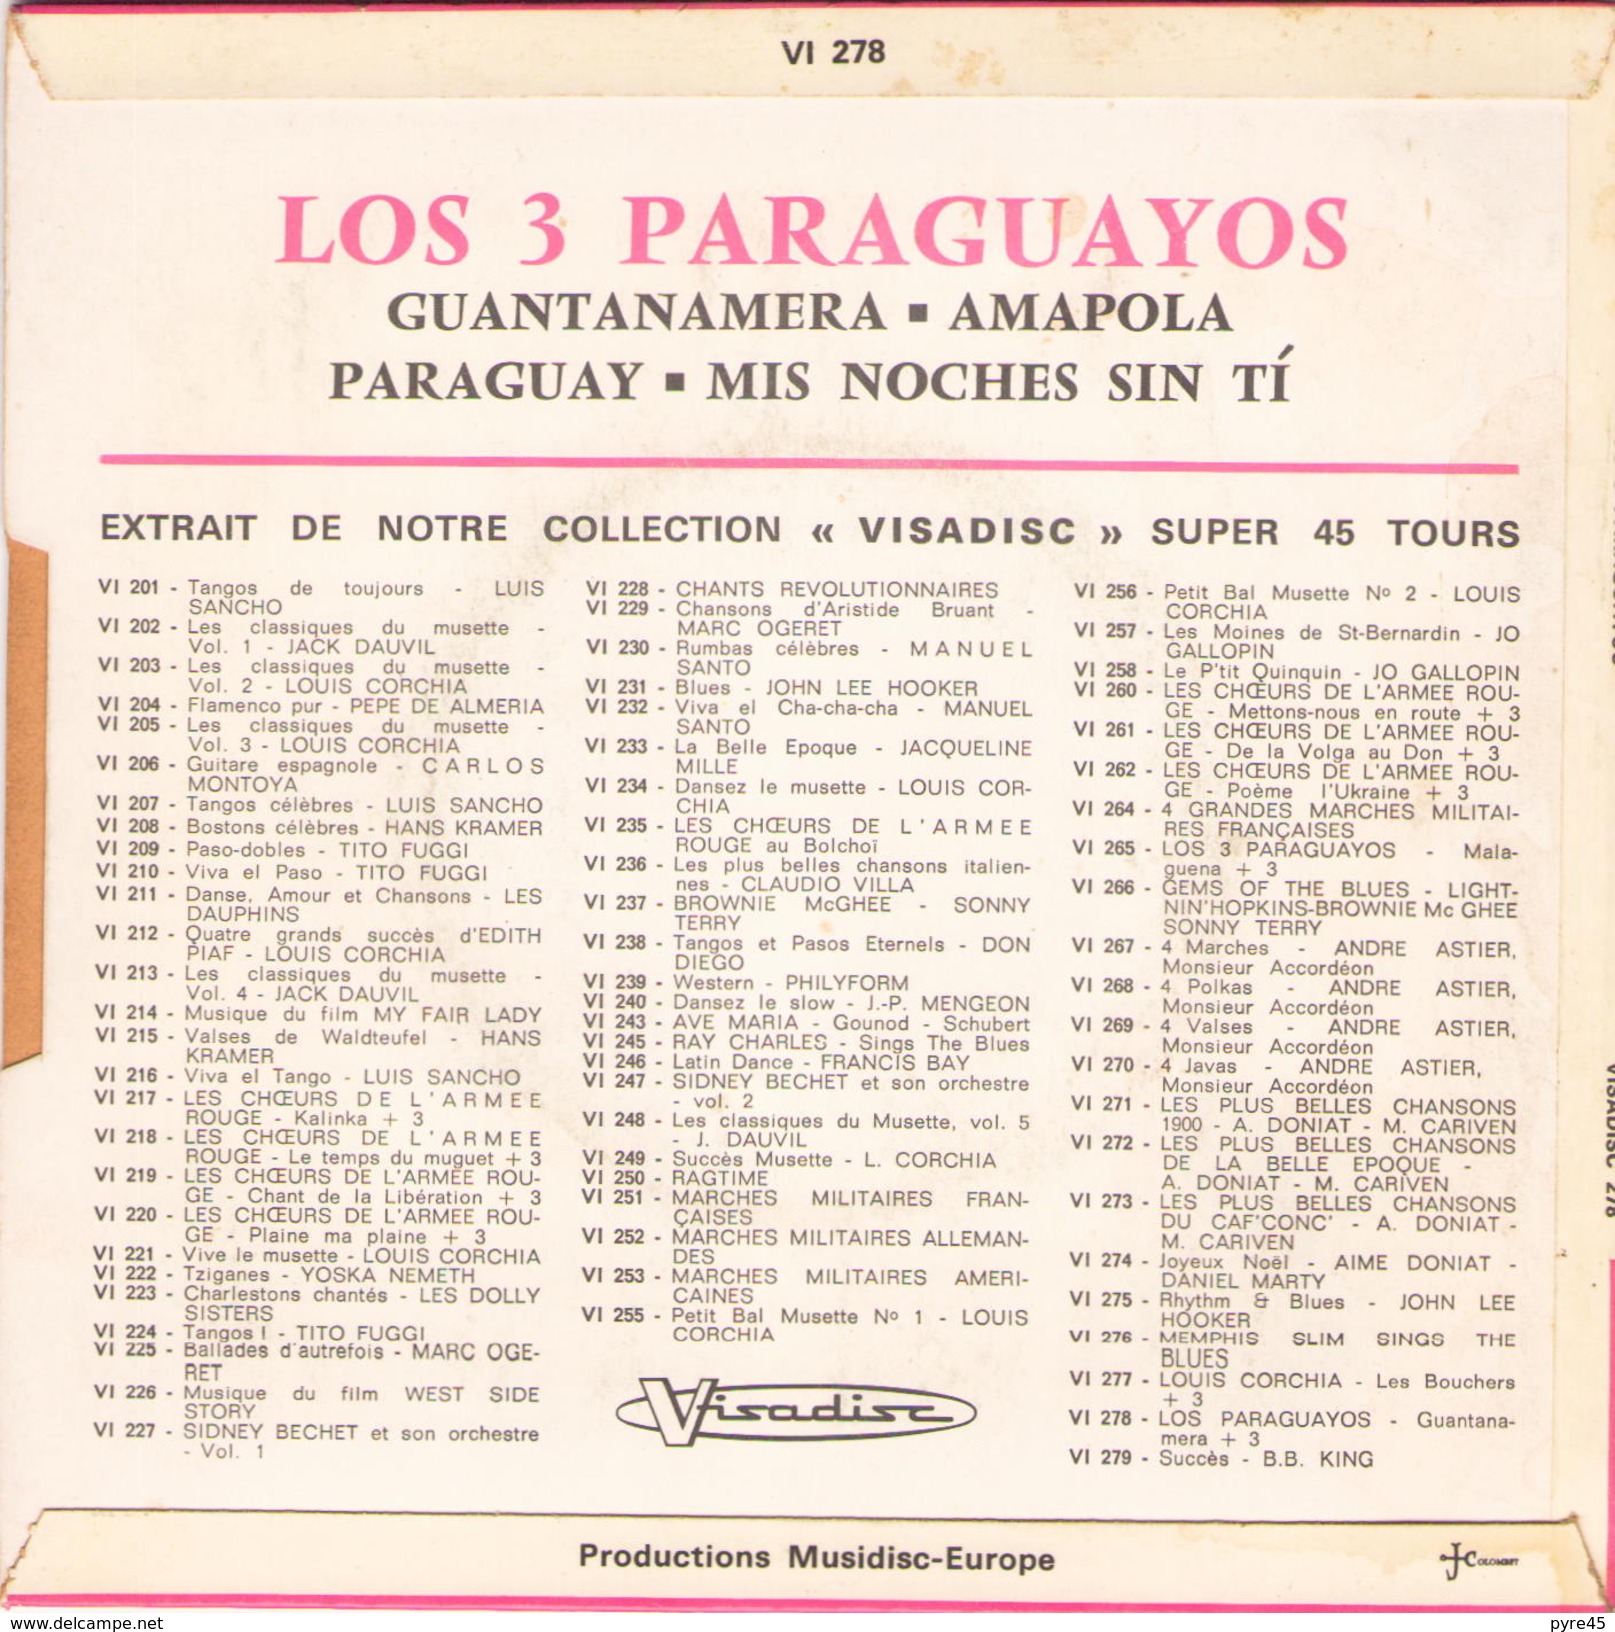 45 TOURS LOS 3 PARAGUAYOS VISADISC 278 OFFERT PAR ANTAR GUANTANAMERA / AMAPOLA / MIS NOCHE SIN TI / PARAGUAY - Musiques Du Monde